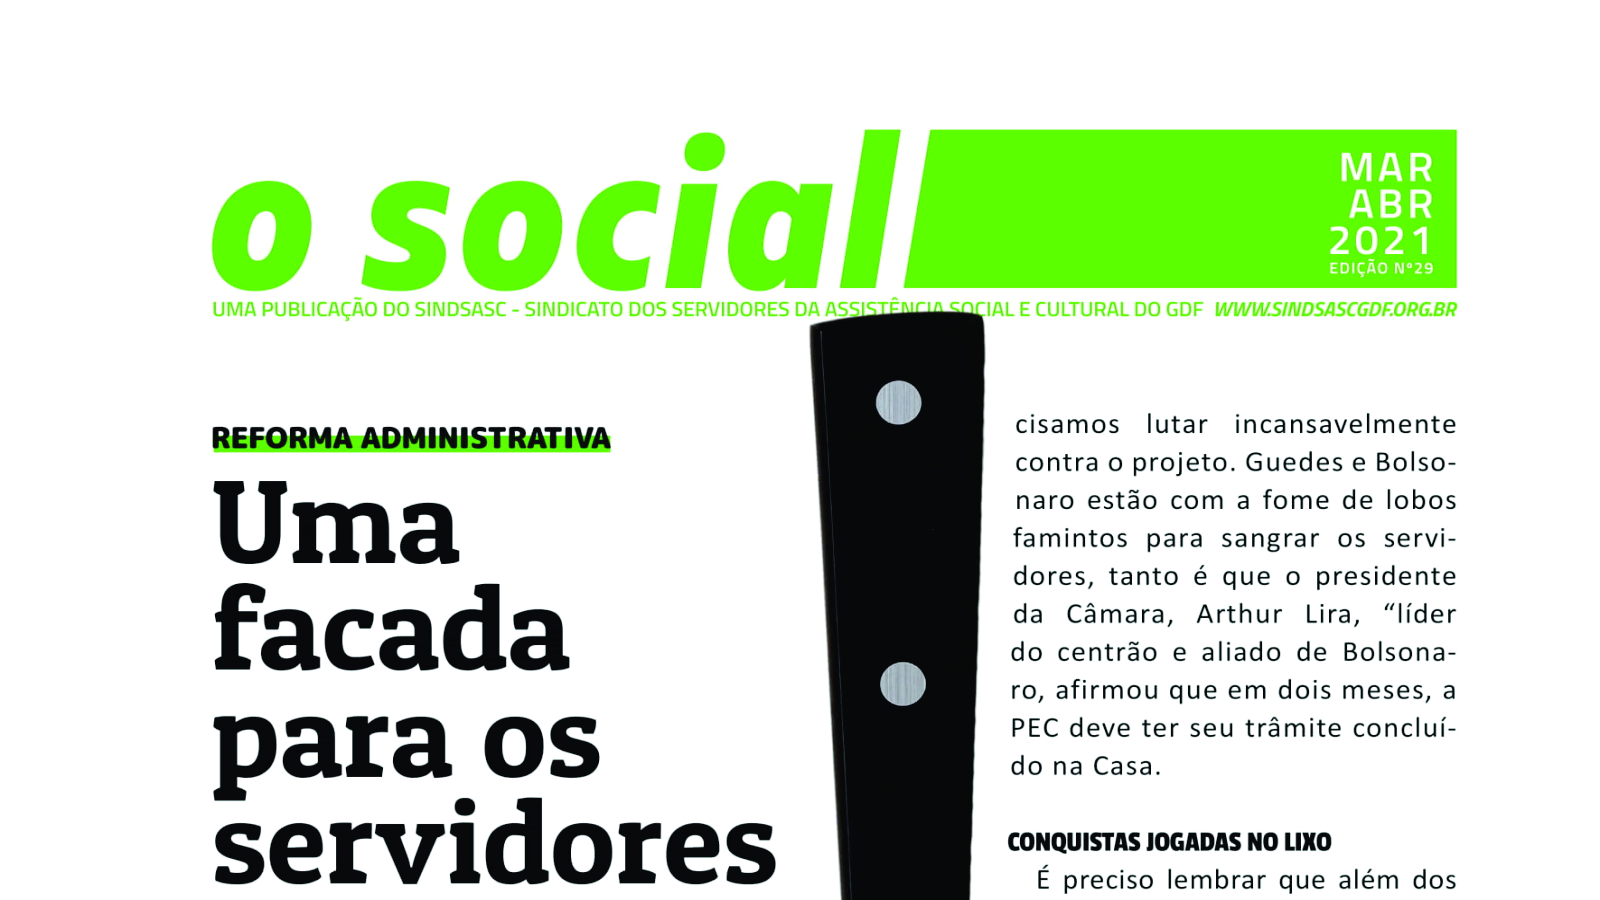 Informativo Bimestral - O SOCIAL - MARÇO / ABRIL 2021